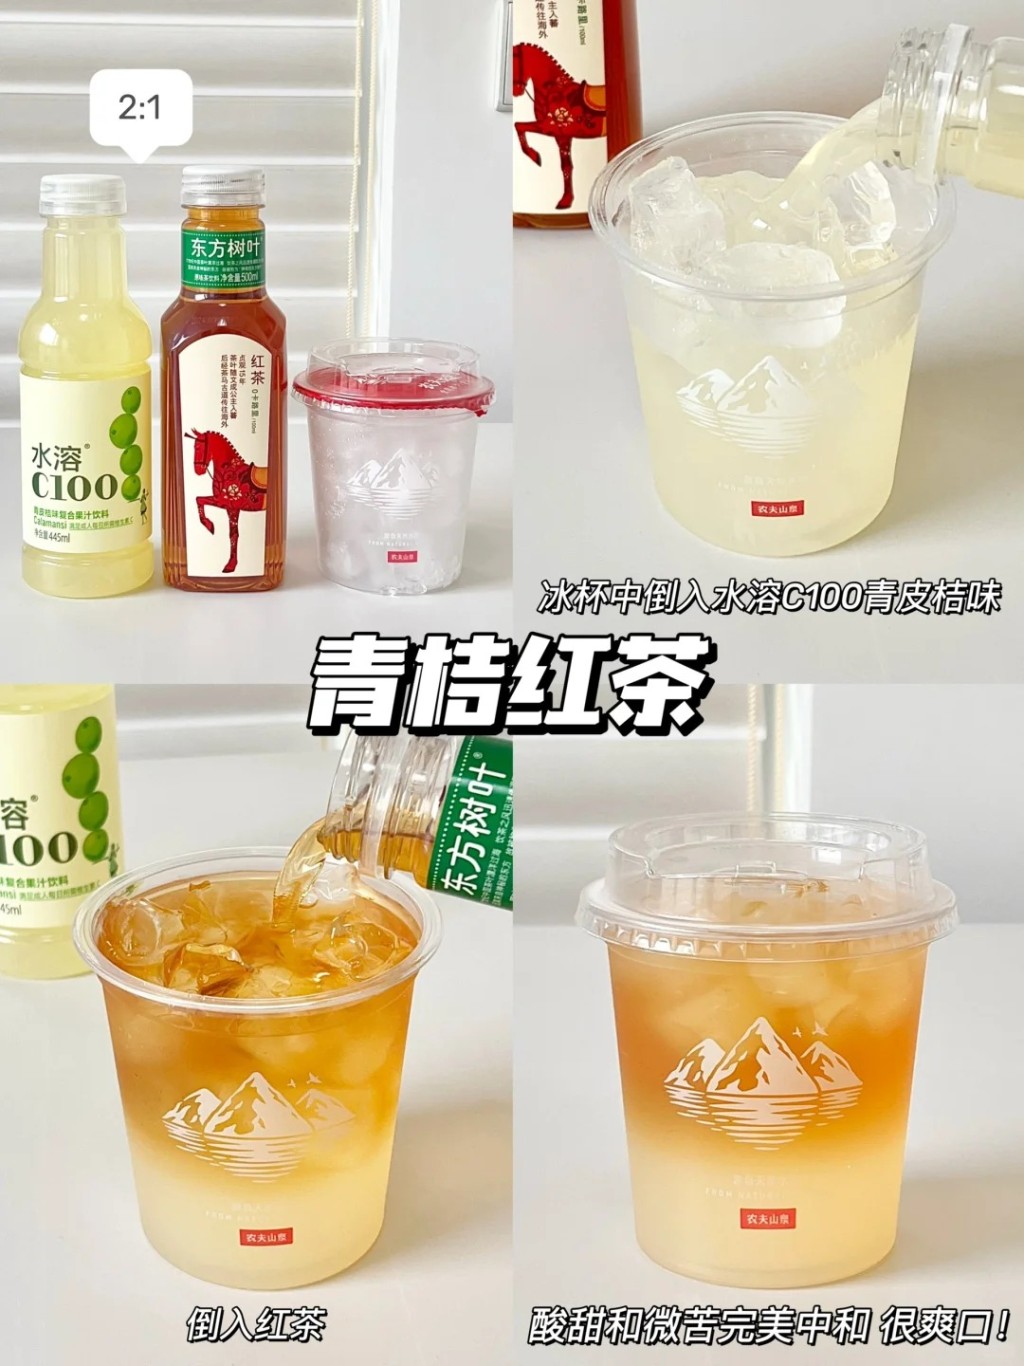 內地社交平台有許多網民分享用「冰杯」調製消暑飲品的方法。